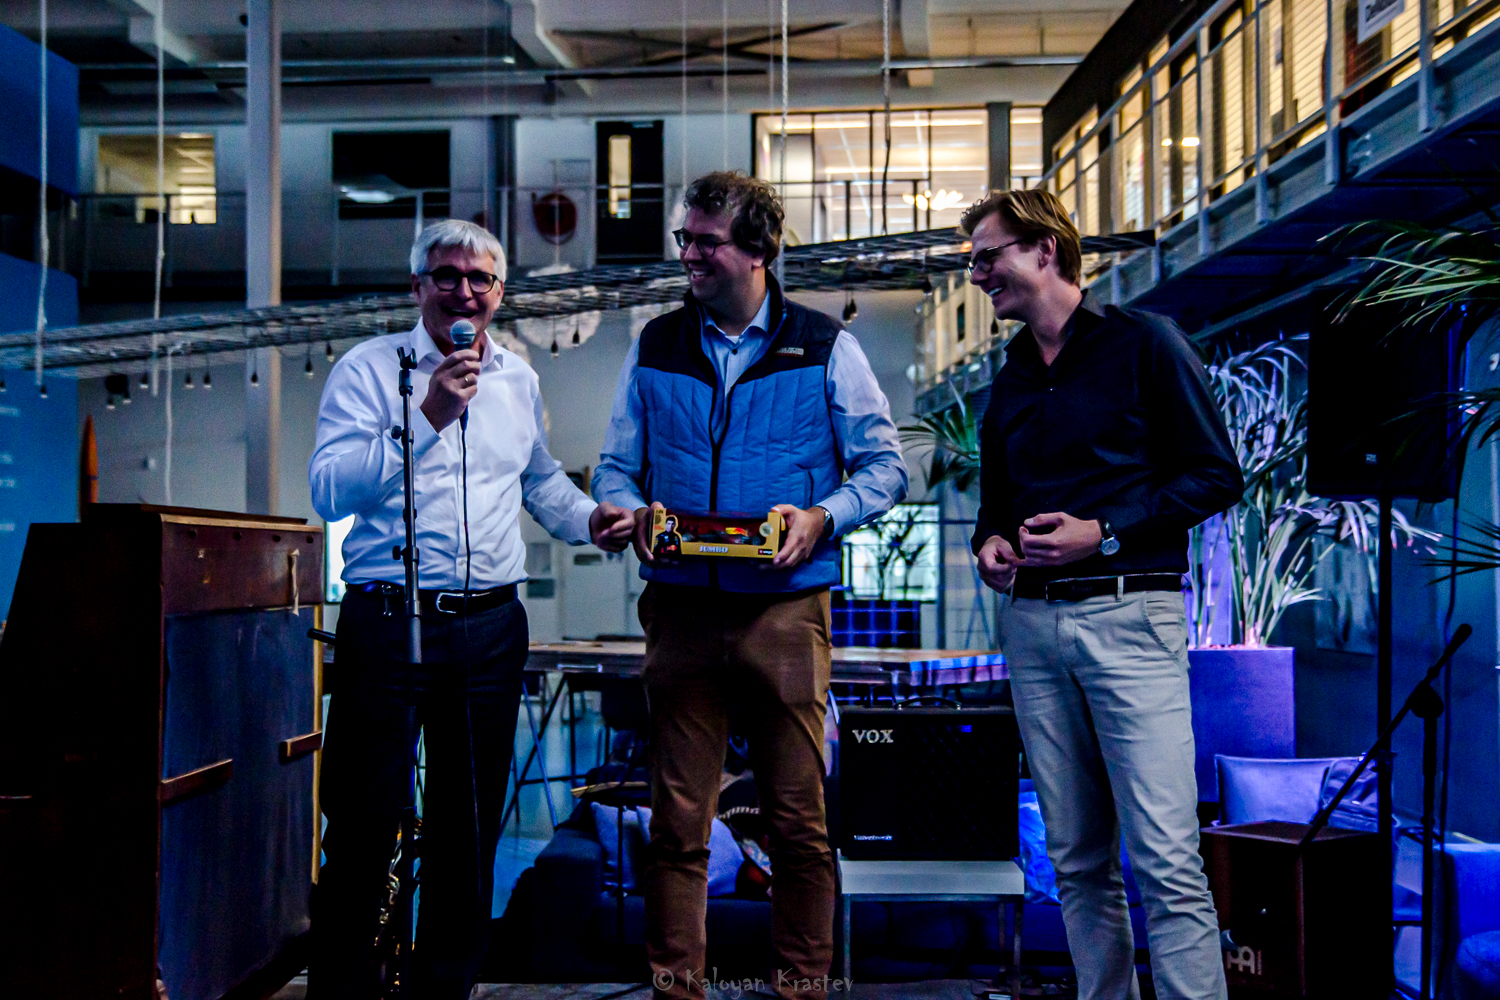 From left to right: Peter Romanow (MÜLLER-BBM AG), Dennis de Klerk & Maarten van der Kooij